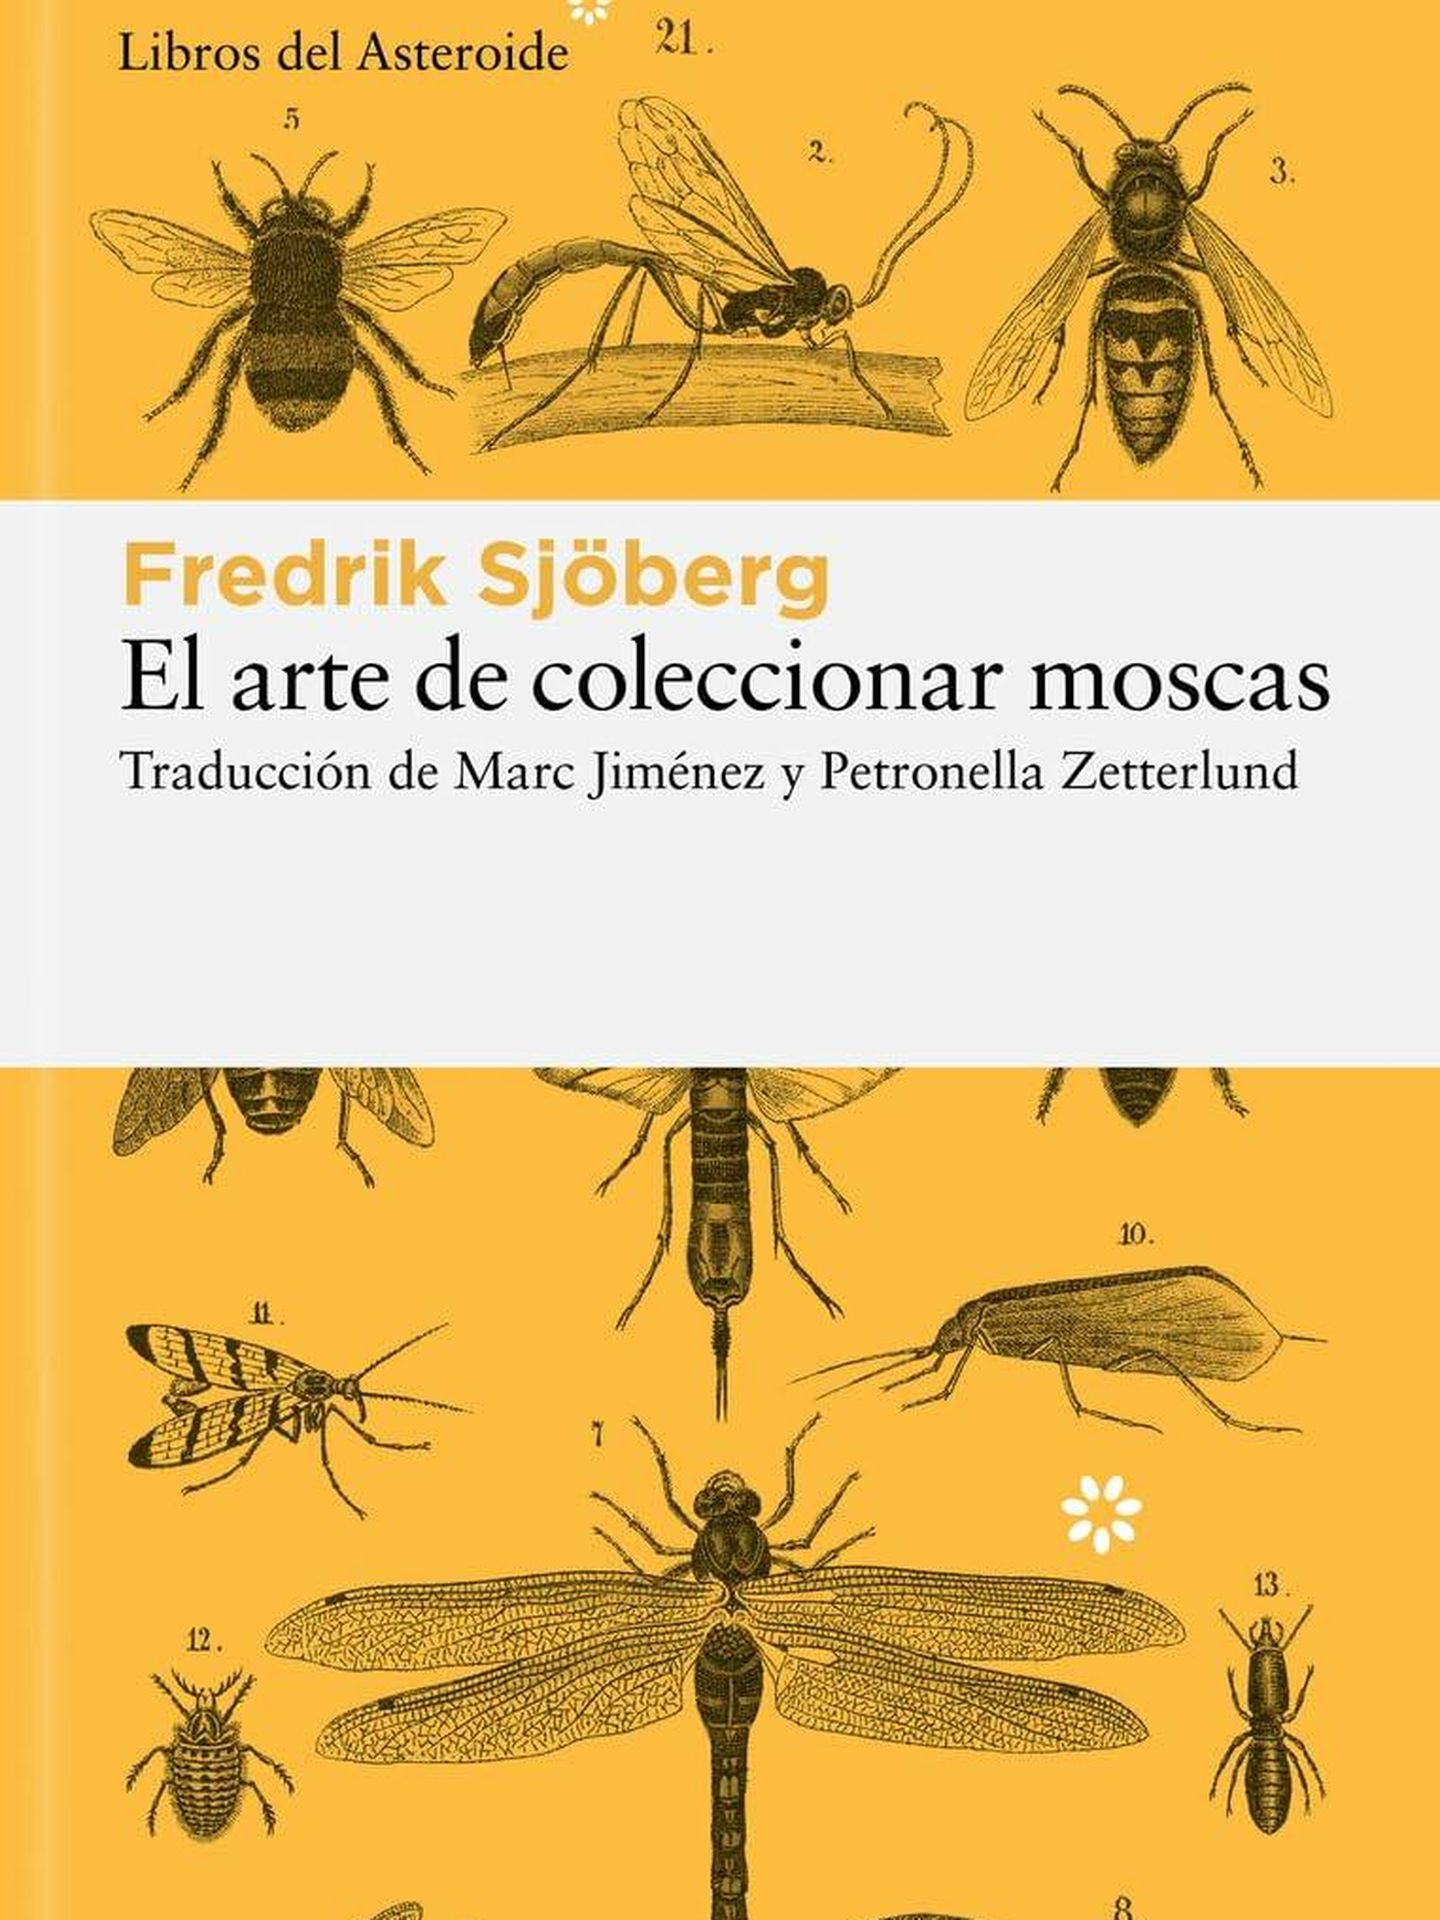 Portada de 'El arte de coleccionar insectos', del sueco Fredrik Sjöberg.